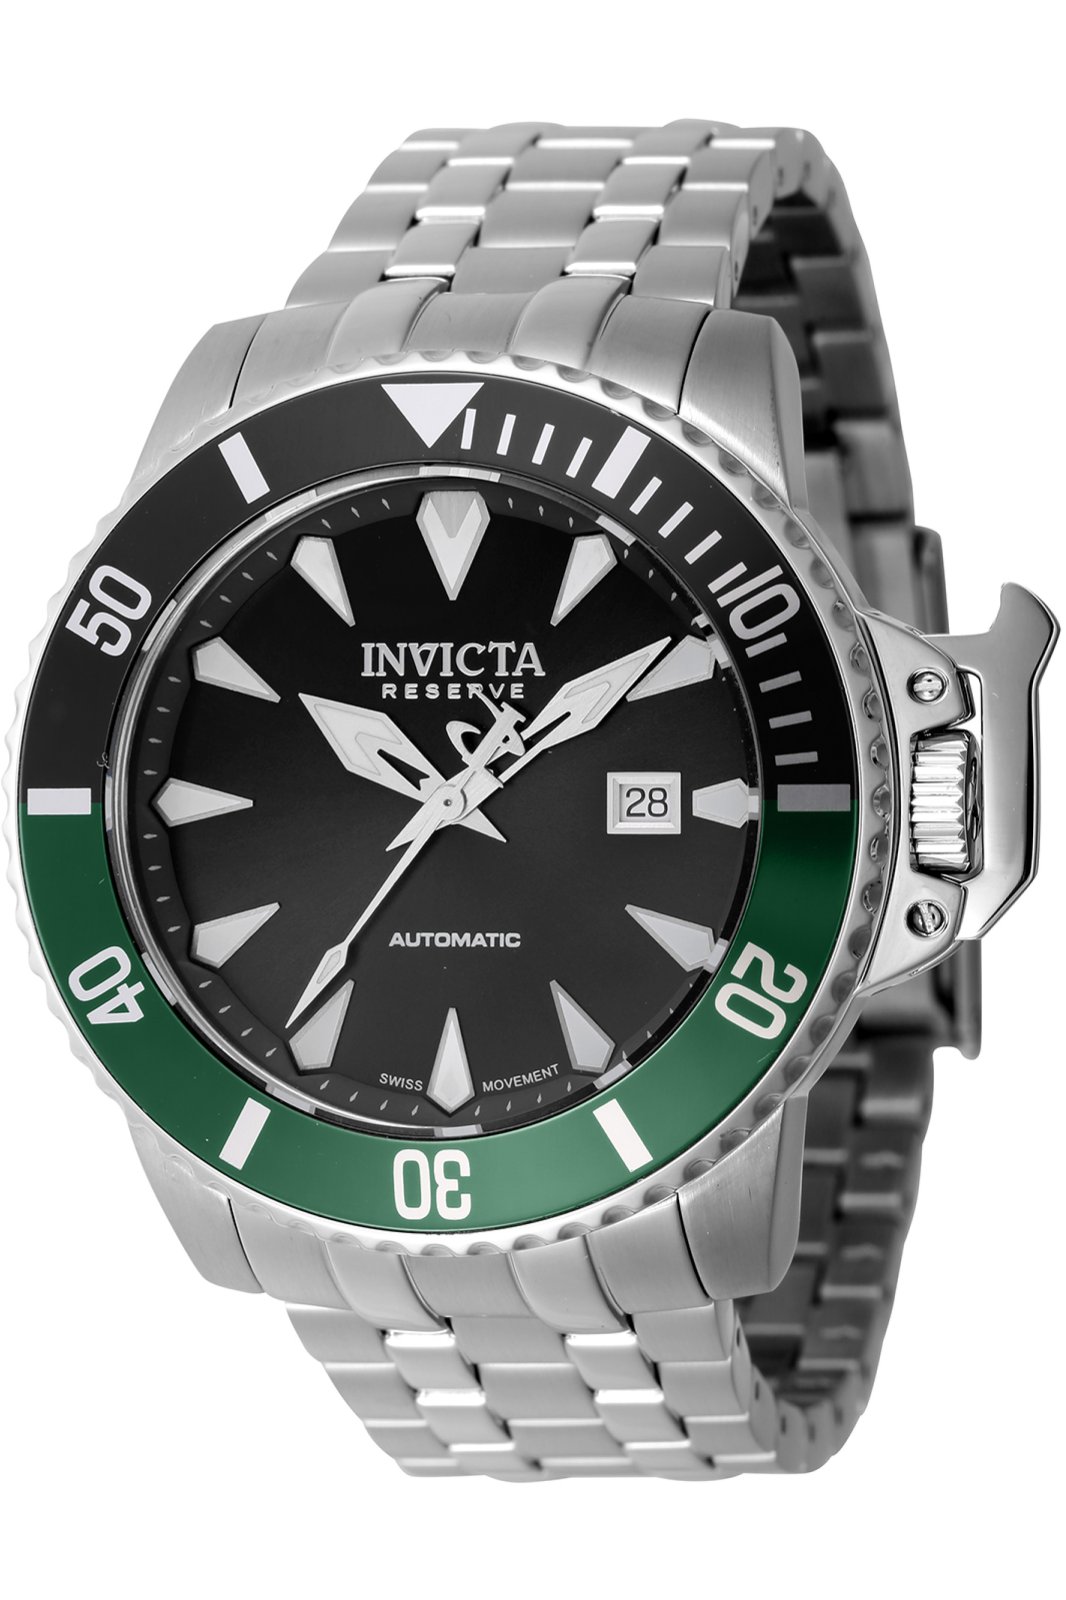 Invicta Subaqua 46157 Men's Automatic Watch - 47mm